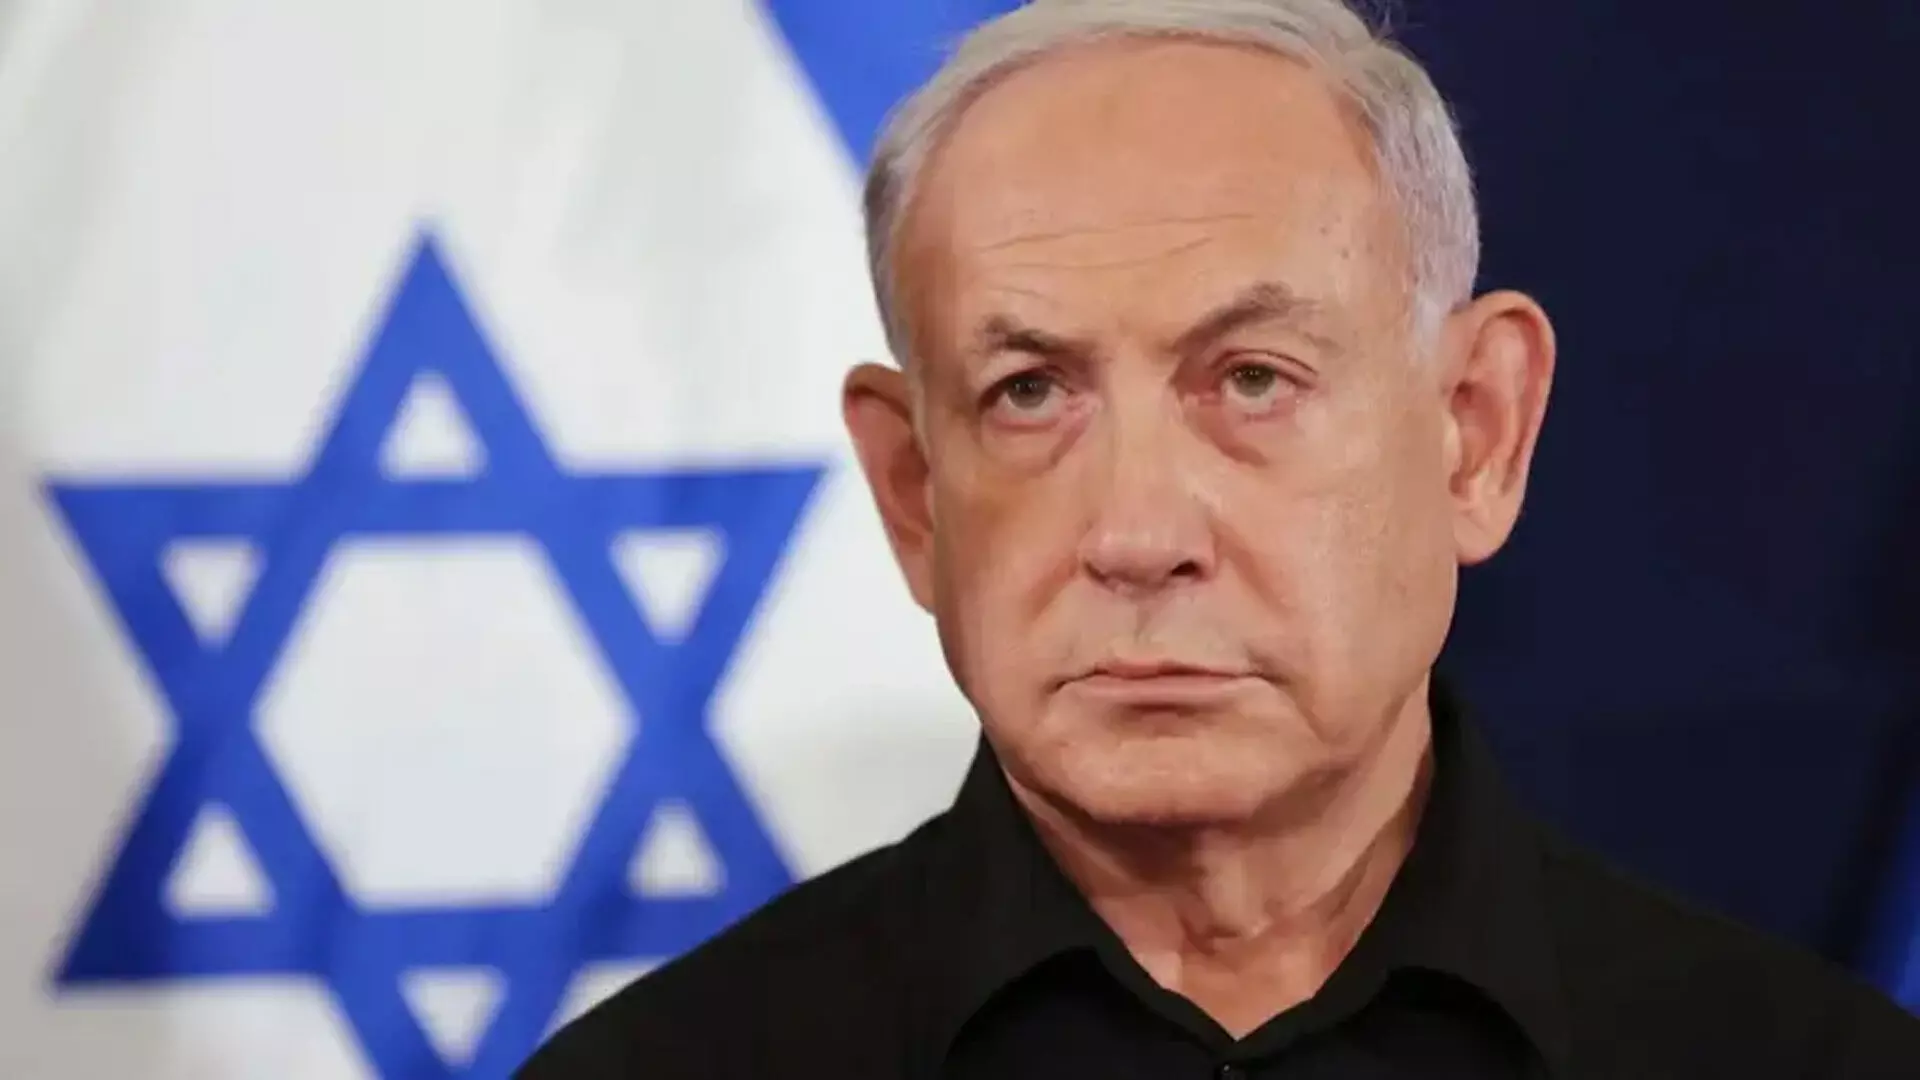 Netanyahu आंशिक युद्धविराम समझौते पर सहमत, कहा हमास के खिलाफ युद्ध छोड़ने को तैयार नहीं